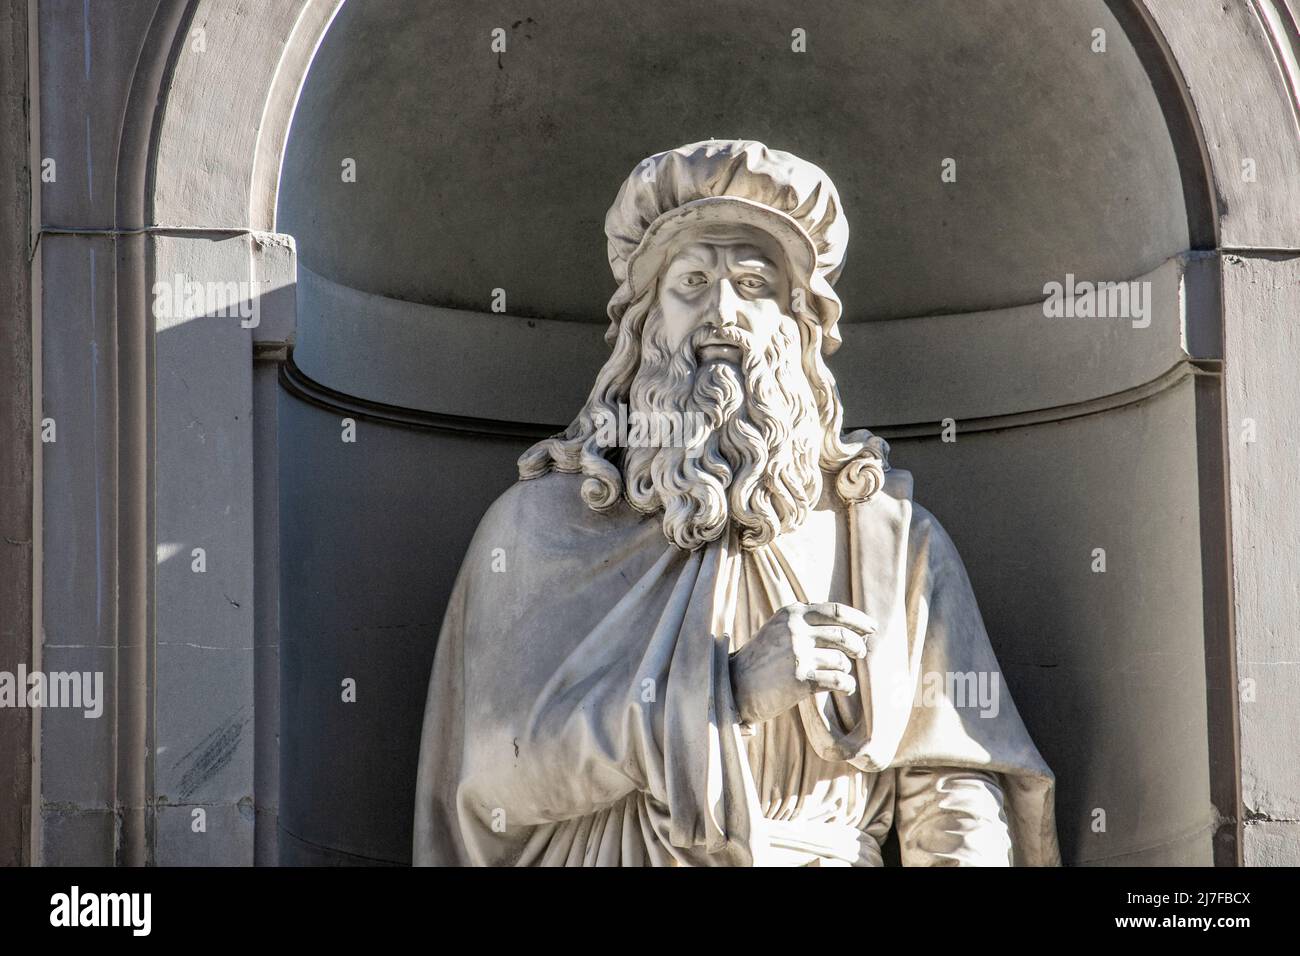 Statue de Léonard de Vinci, Piazzale degli Uffizi, Florence, Italie Banque D'Images